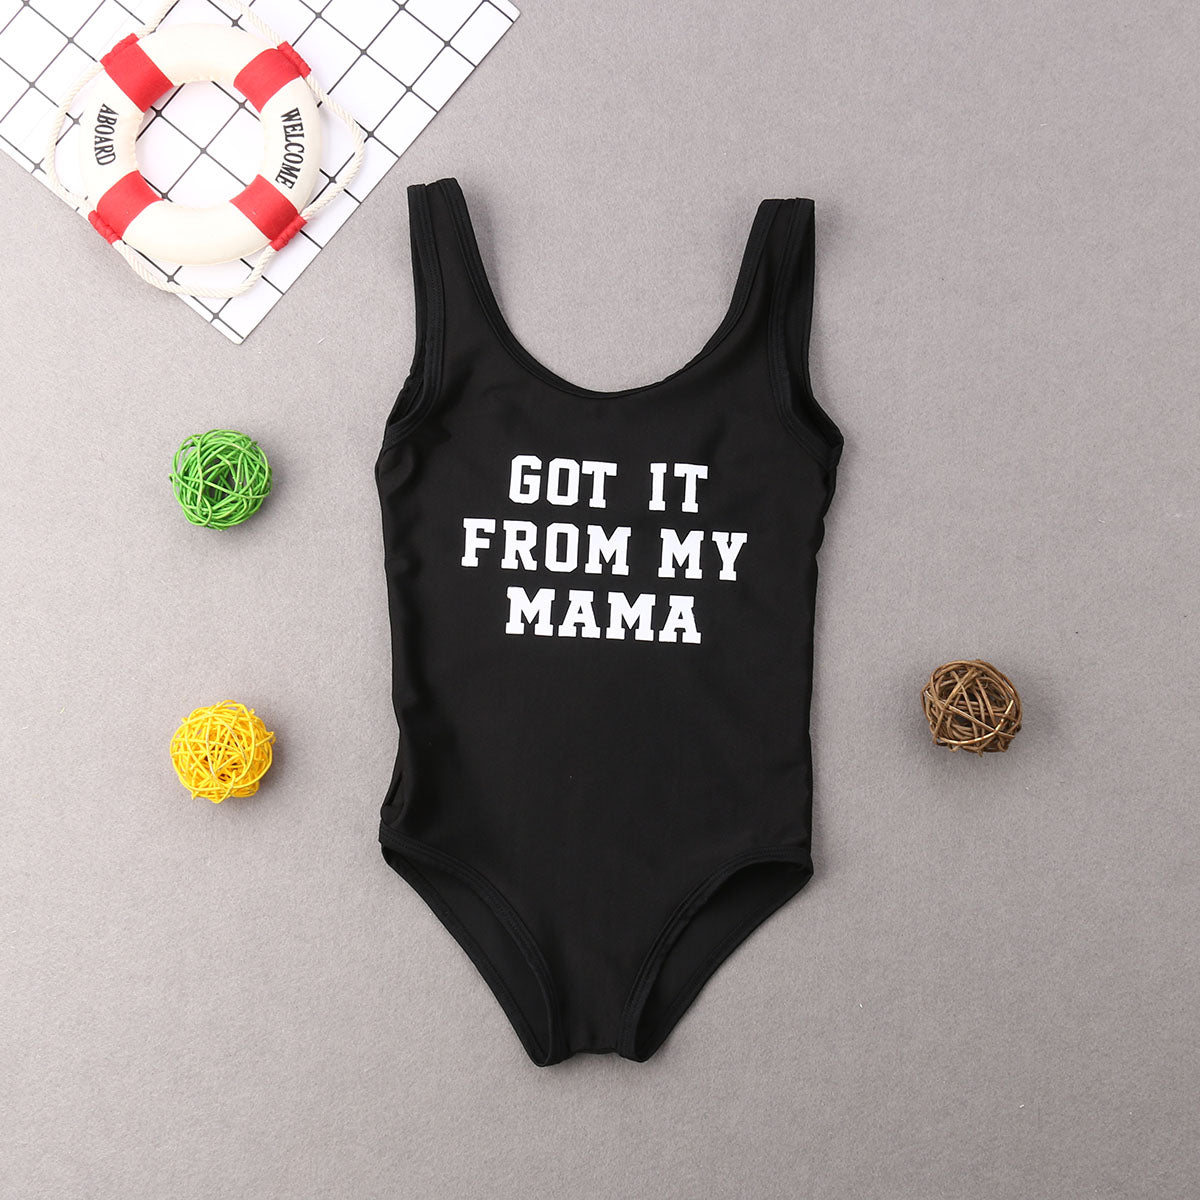 Mama, Papa and child swimsuit